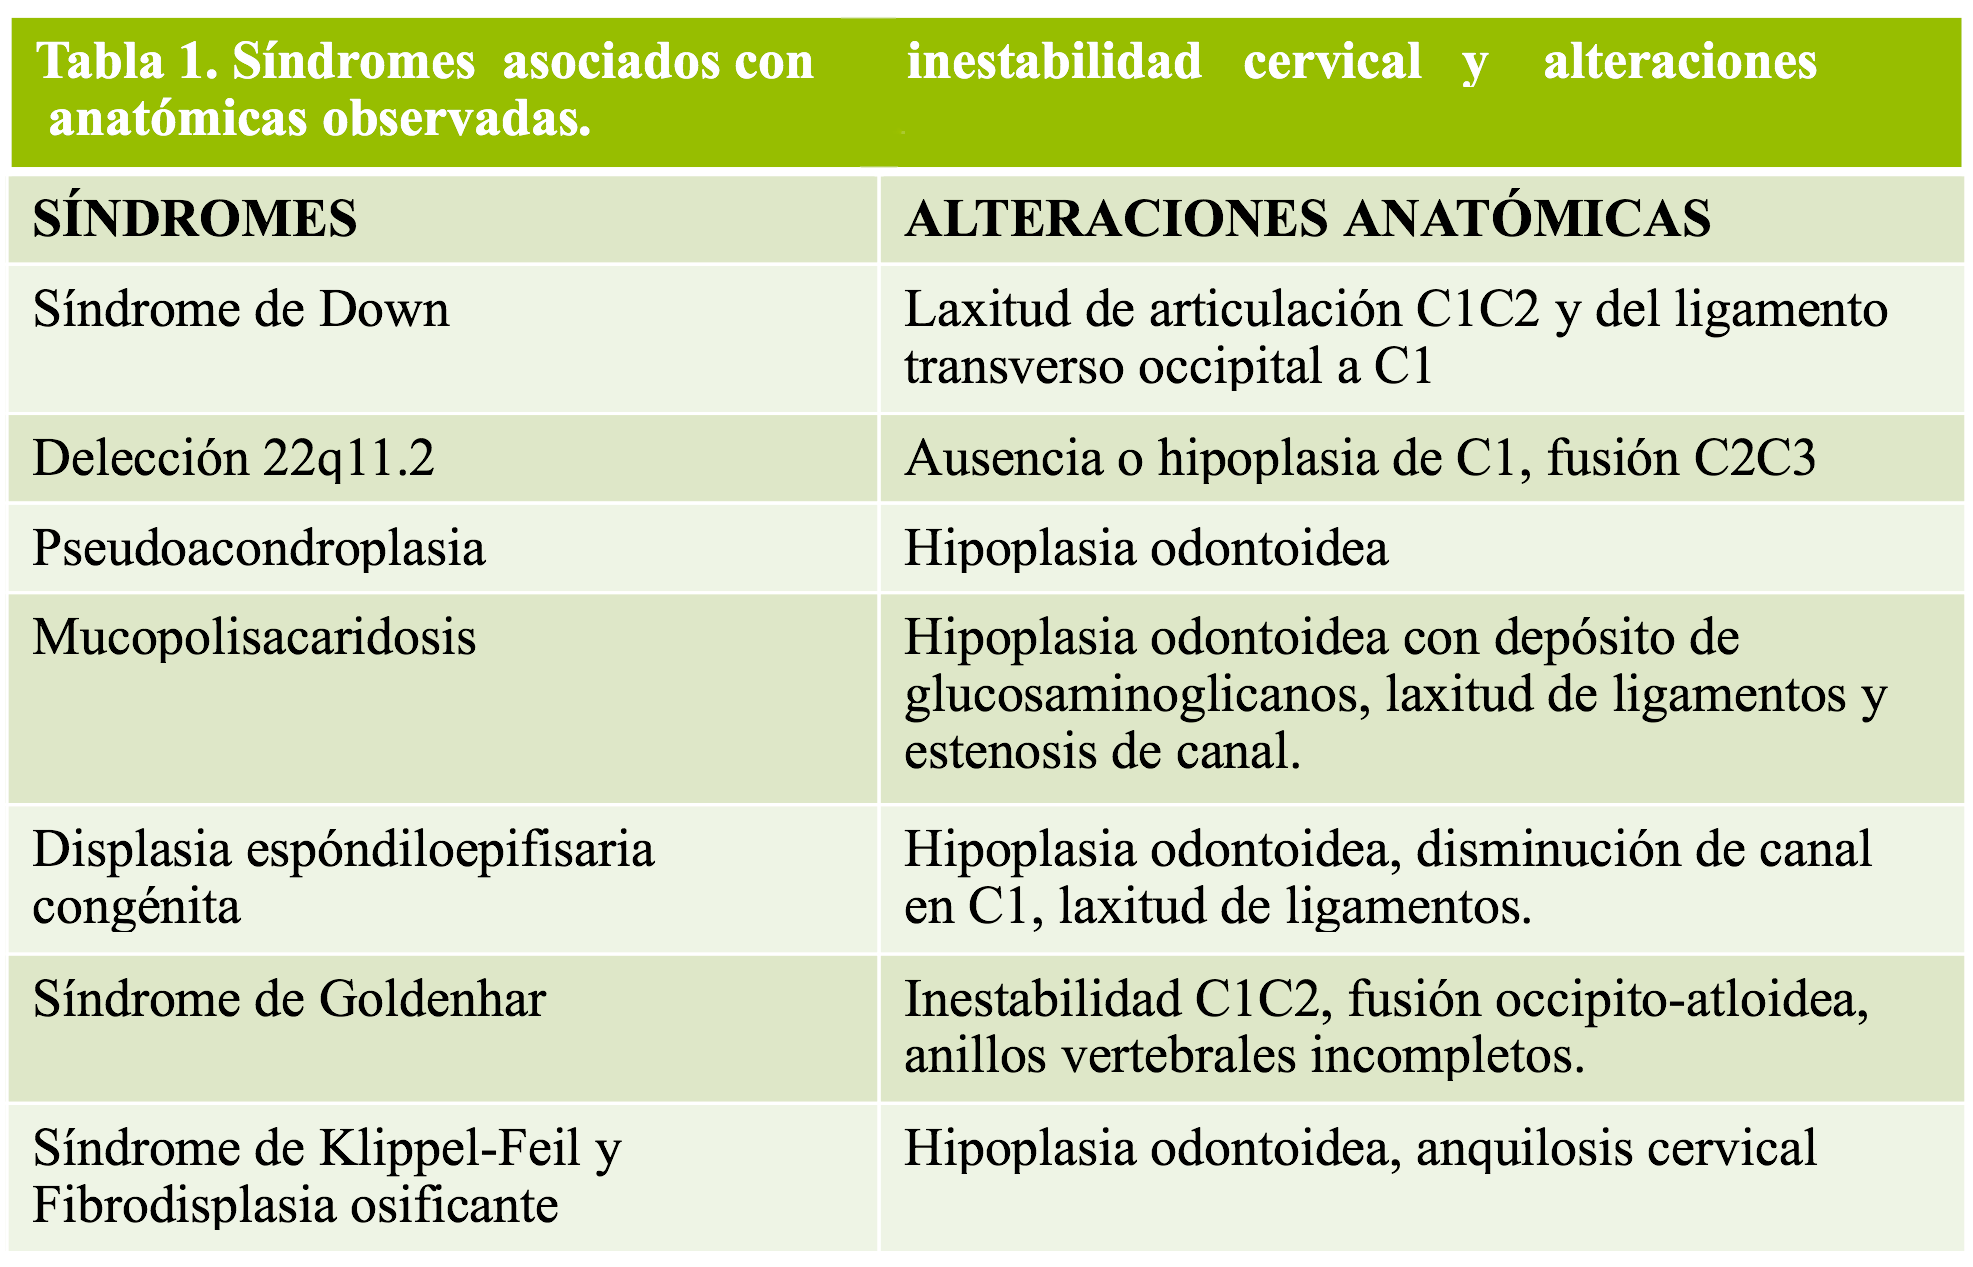 Tabla 1 - sdrs. asociados con inestabilidad cervical